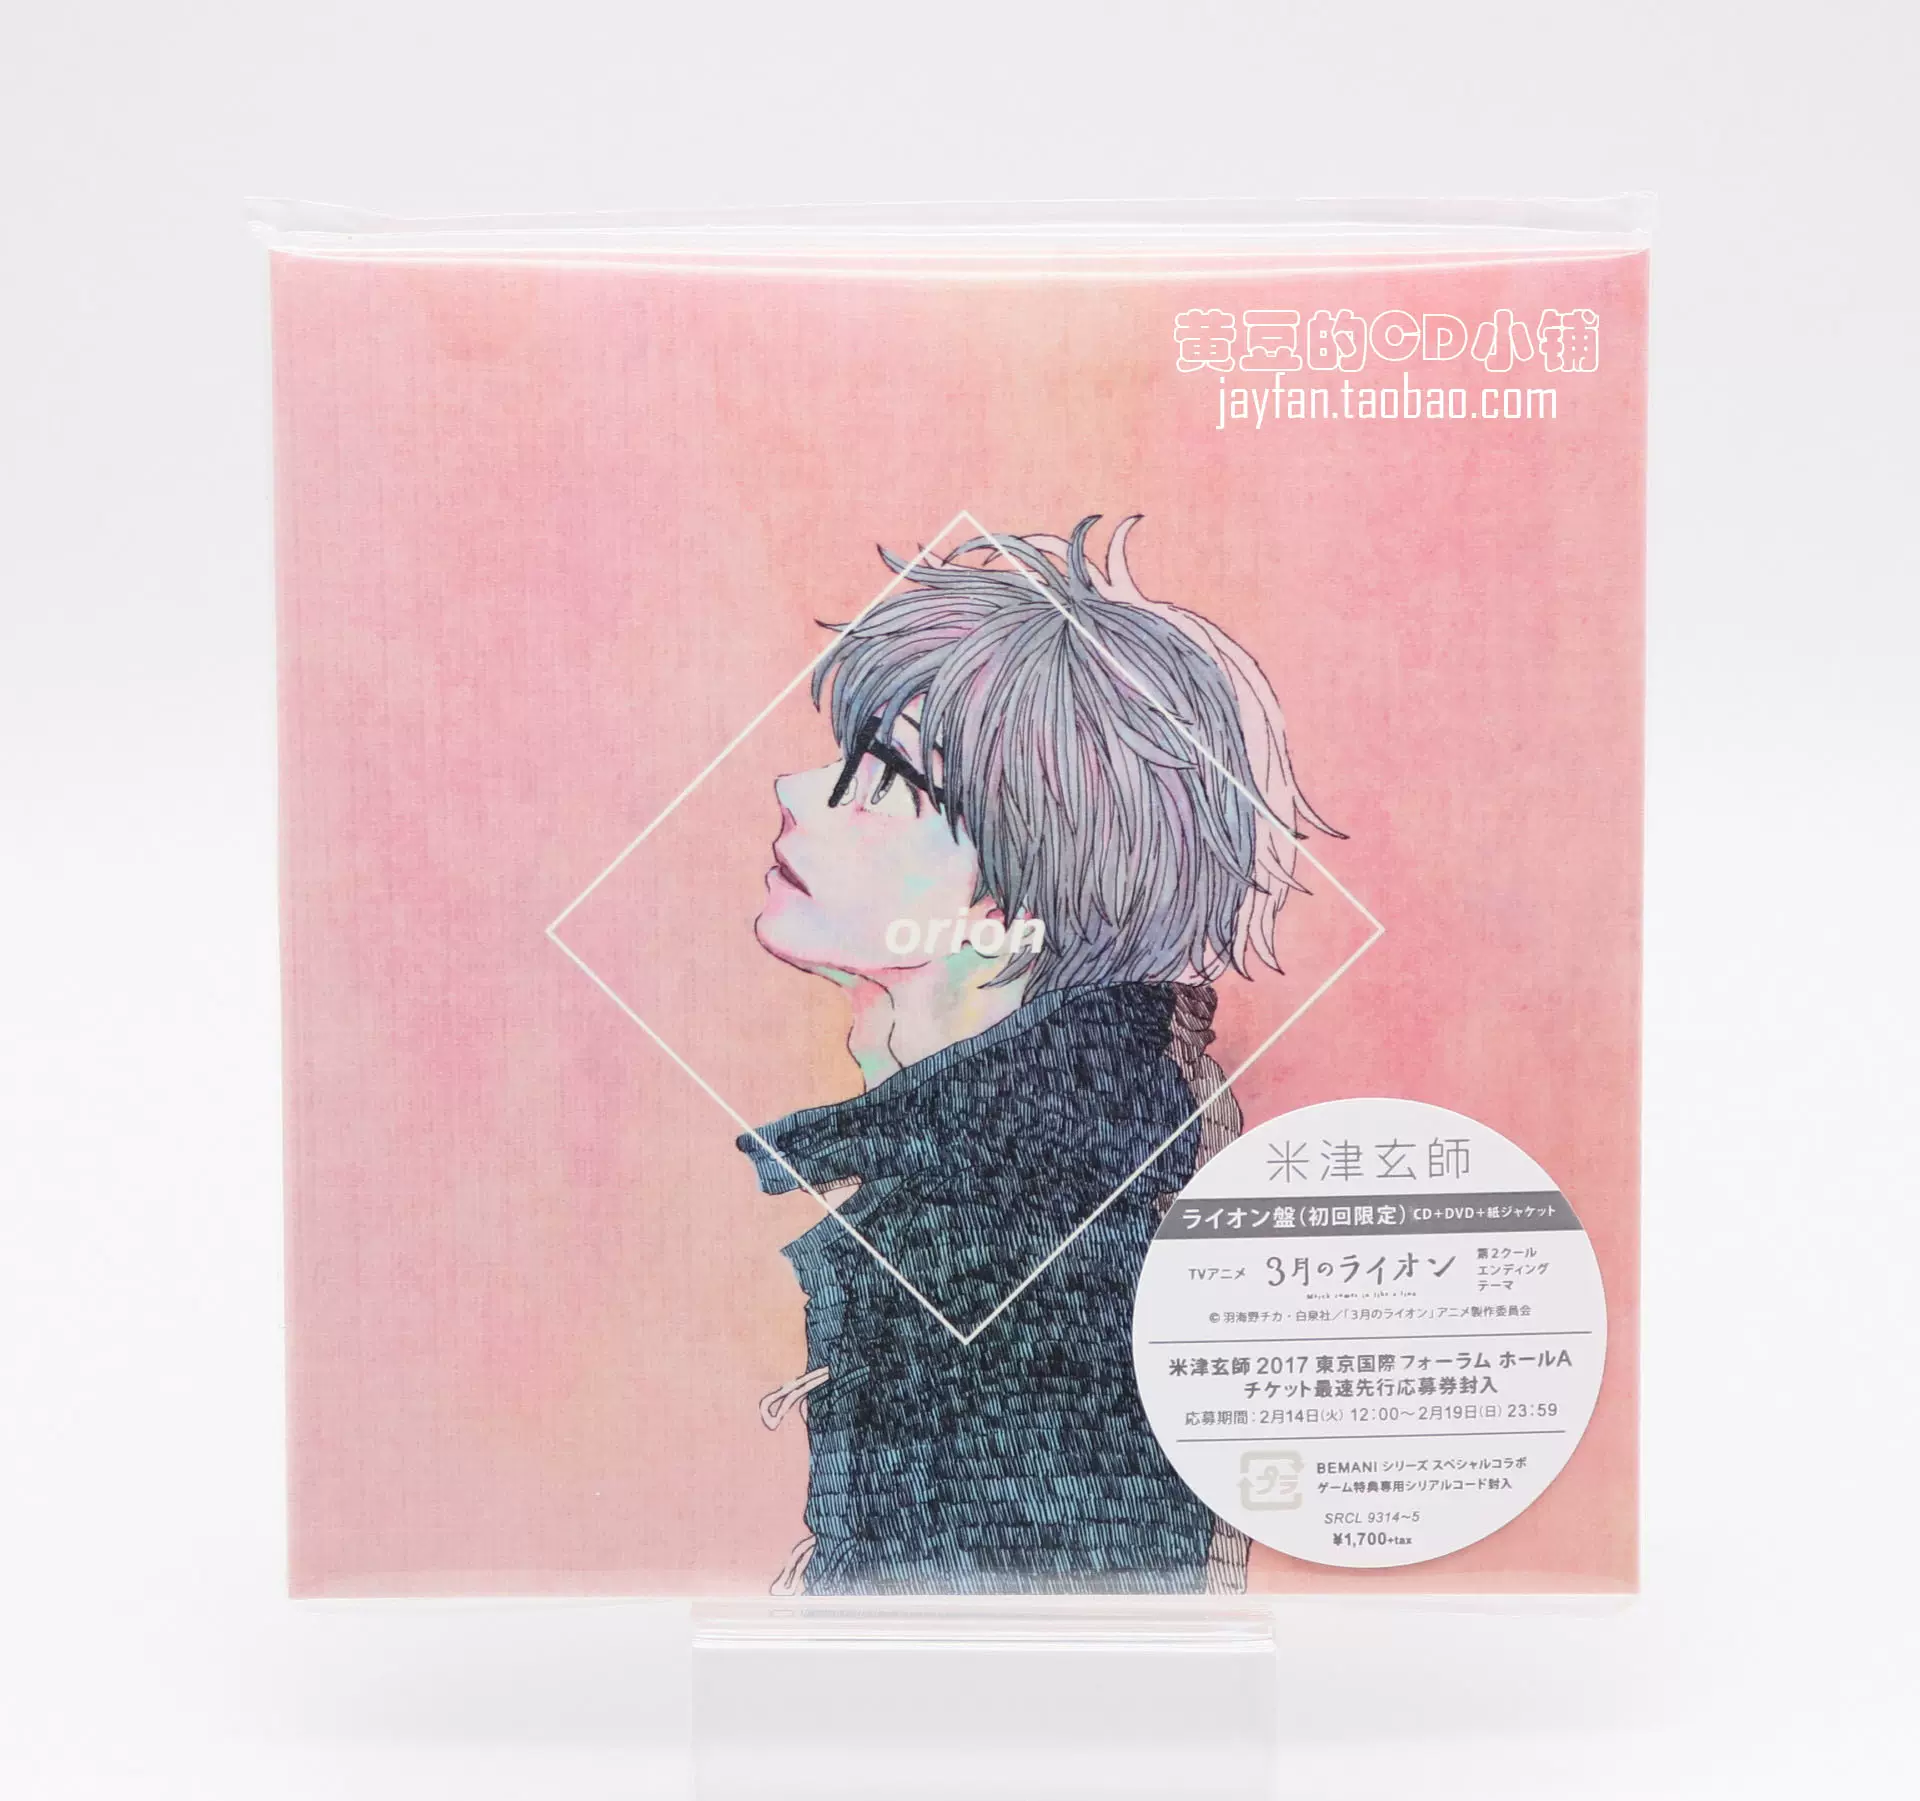 米津玄师米津玄師orion 初回限定盘B CD+DVD-Taobao